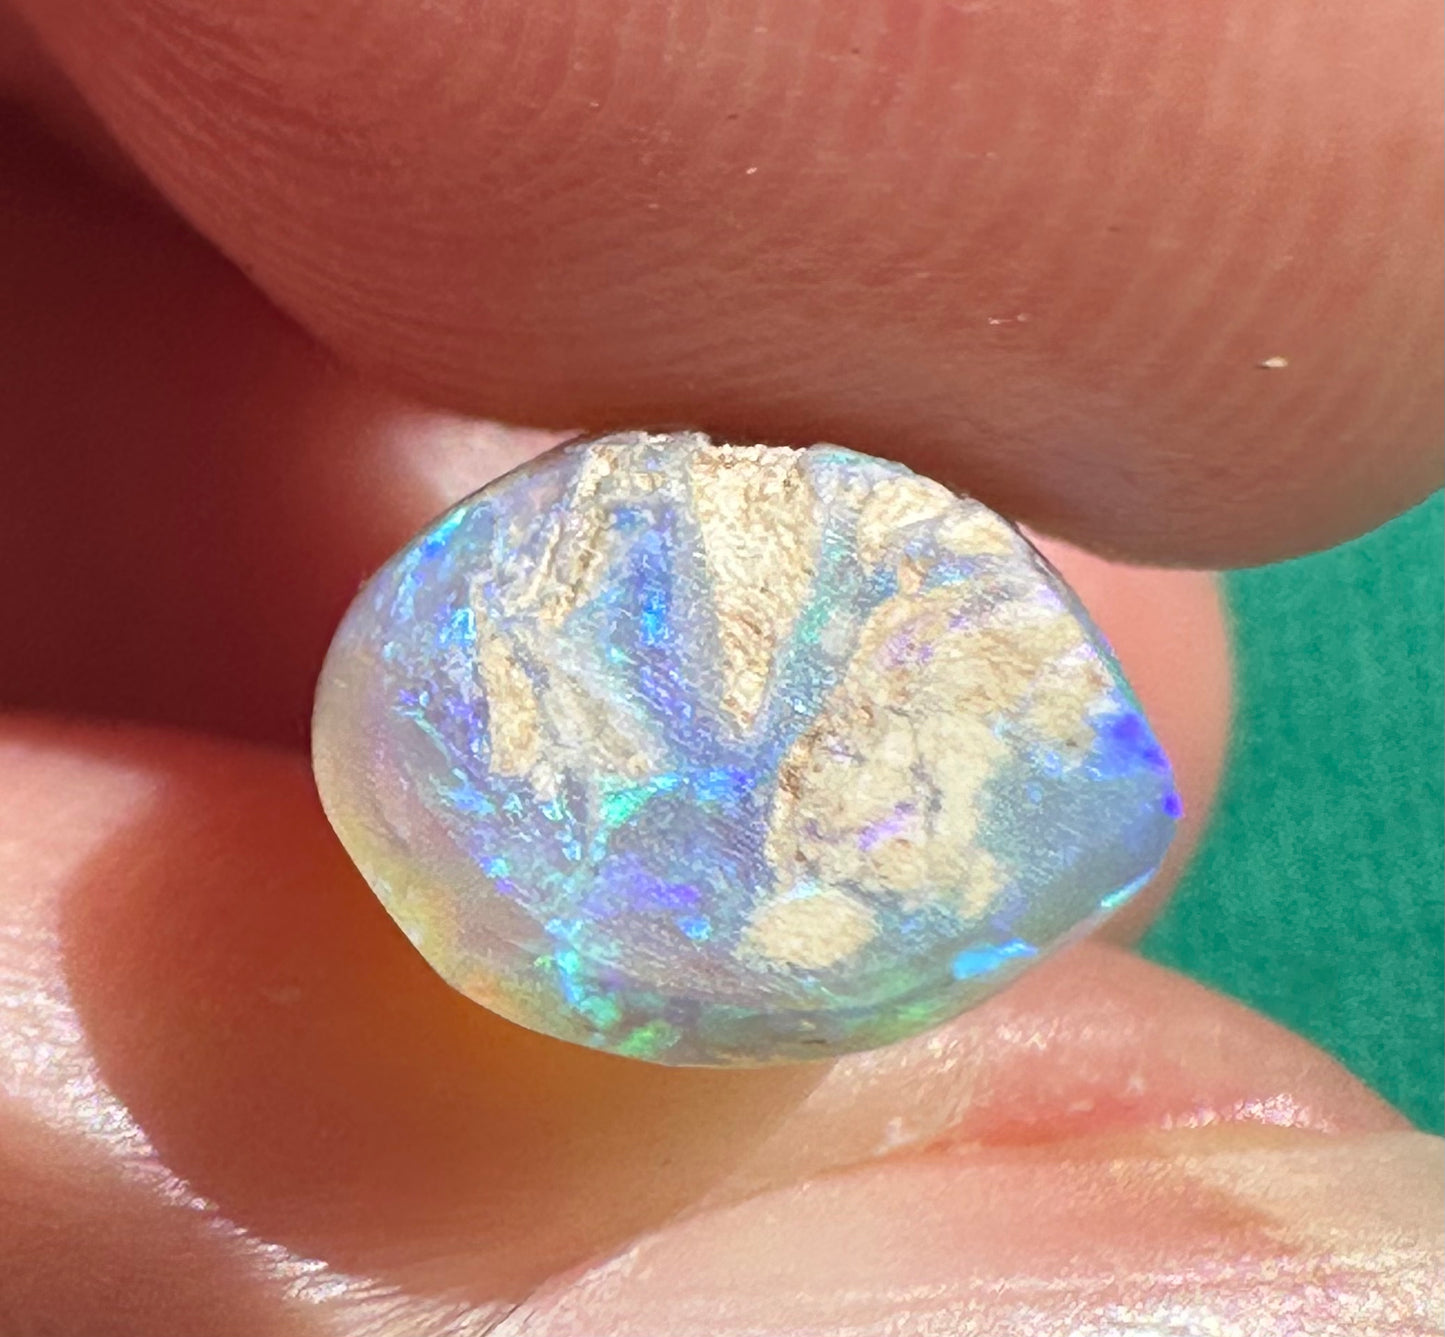 Stunning Australian Opal Belemnite